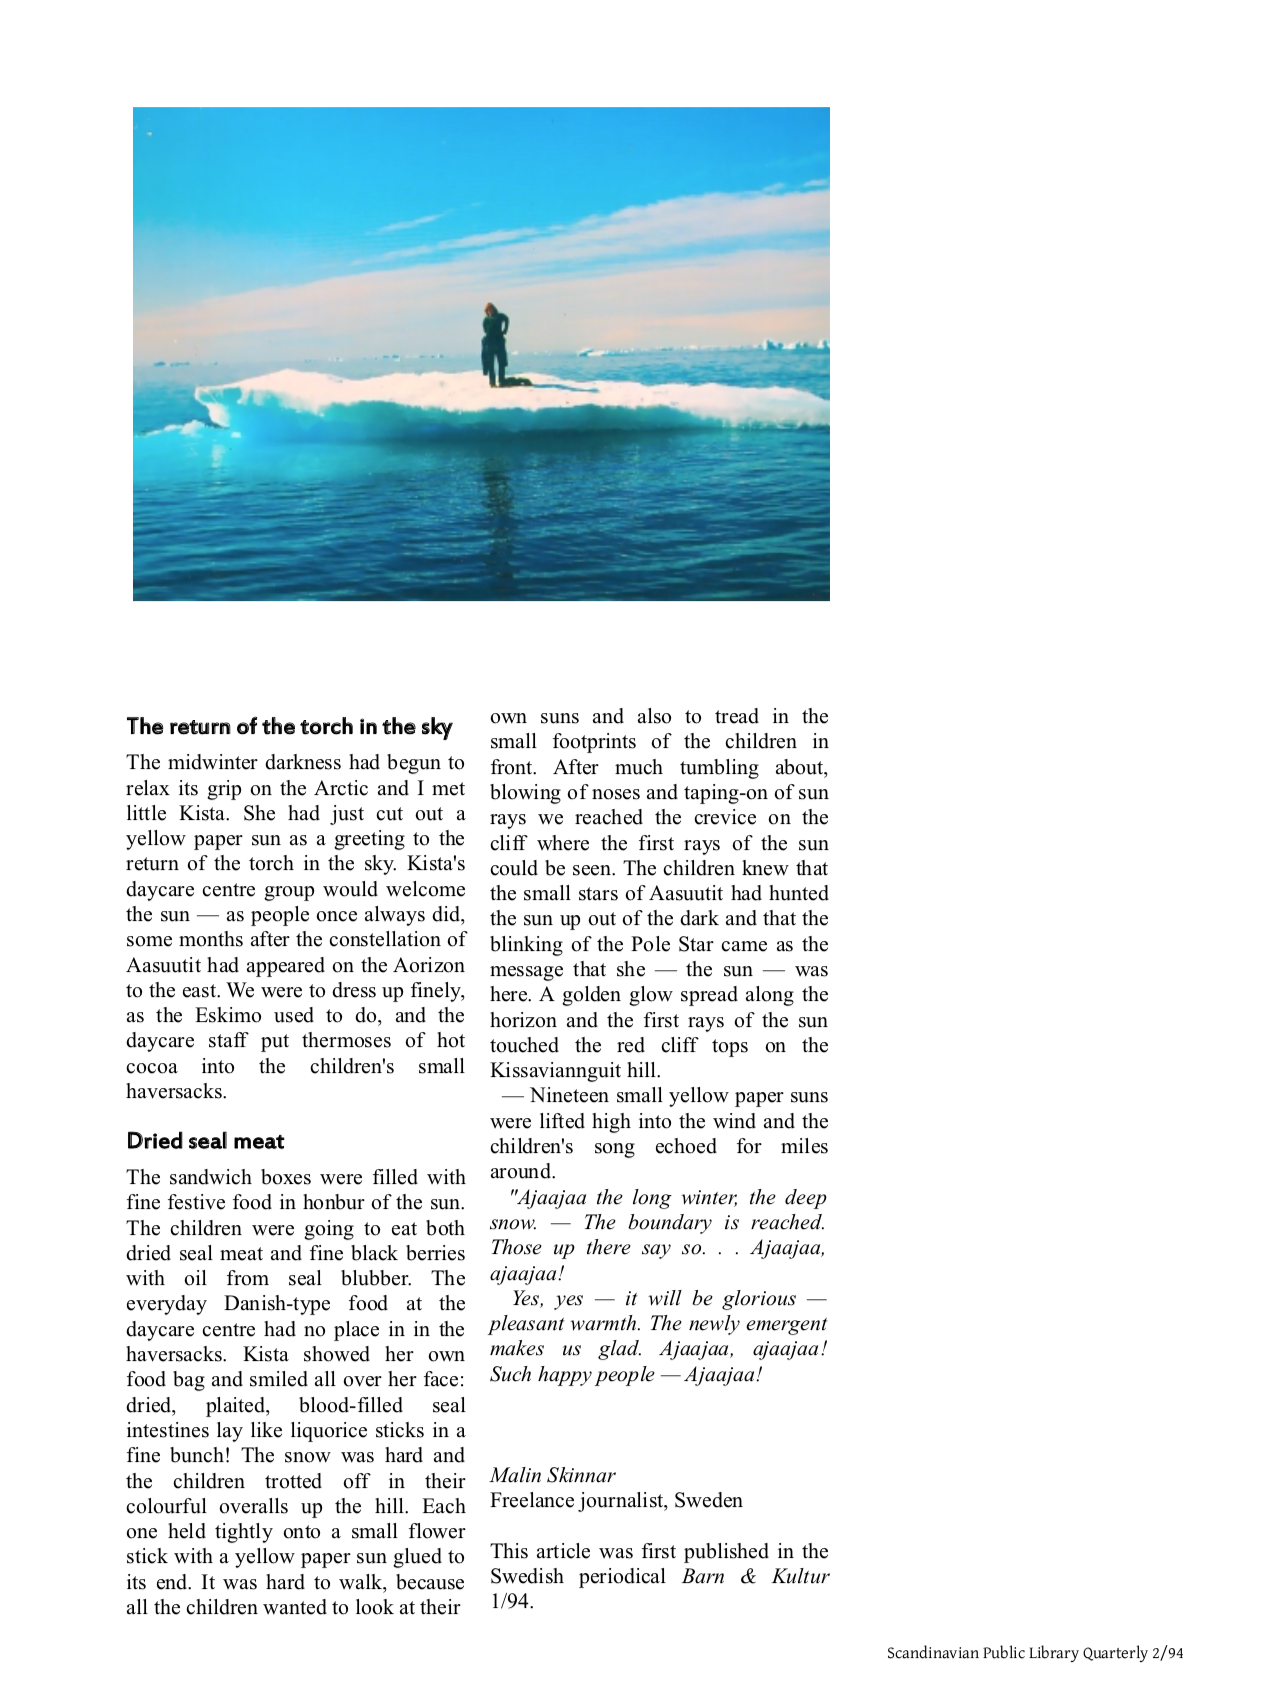 Kalaallit Nunaat - Greenland, article by Malin Skinnar